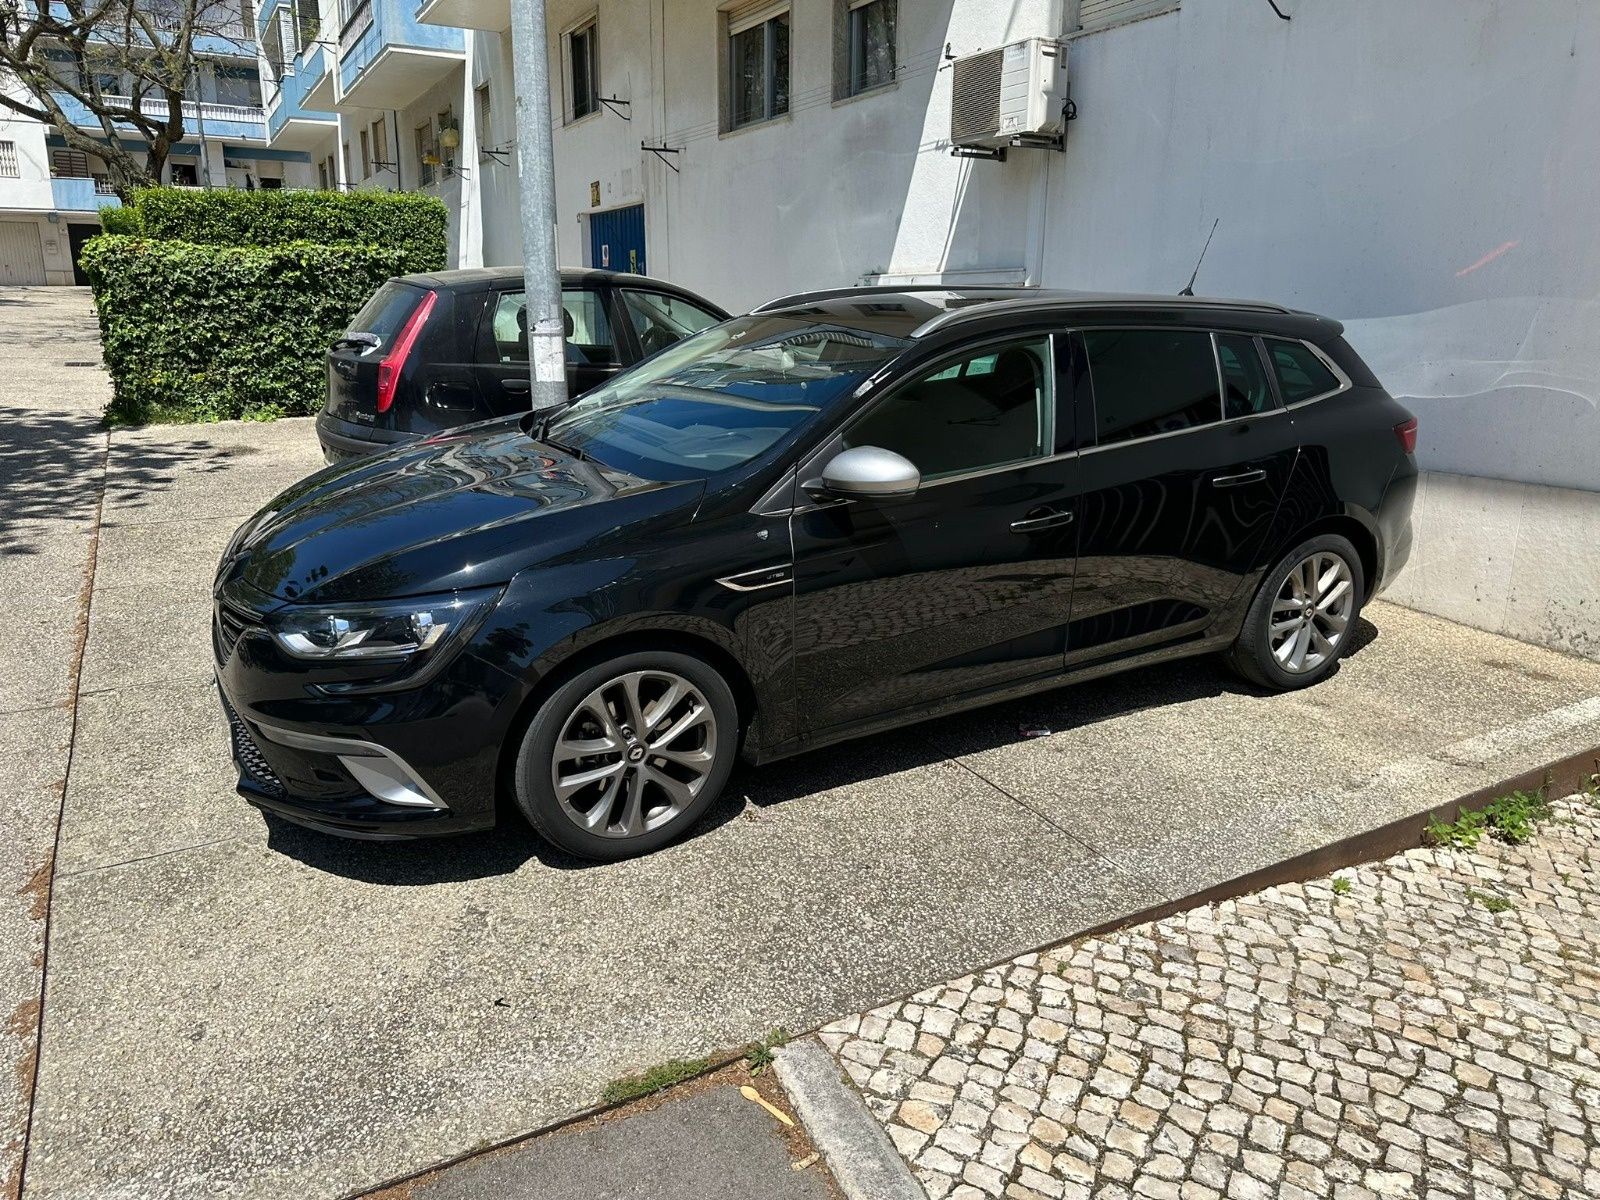 Renault Megane 1.5 Gtline, 2019, nacional com 14500km em óptimo estado